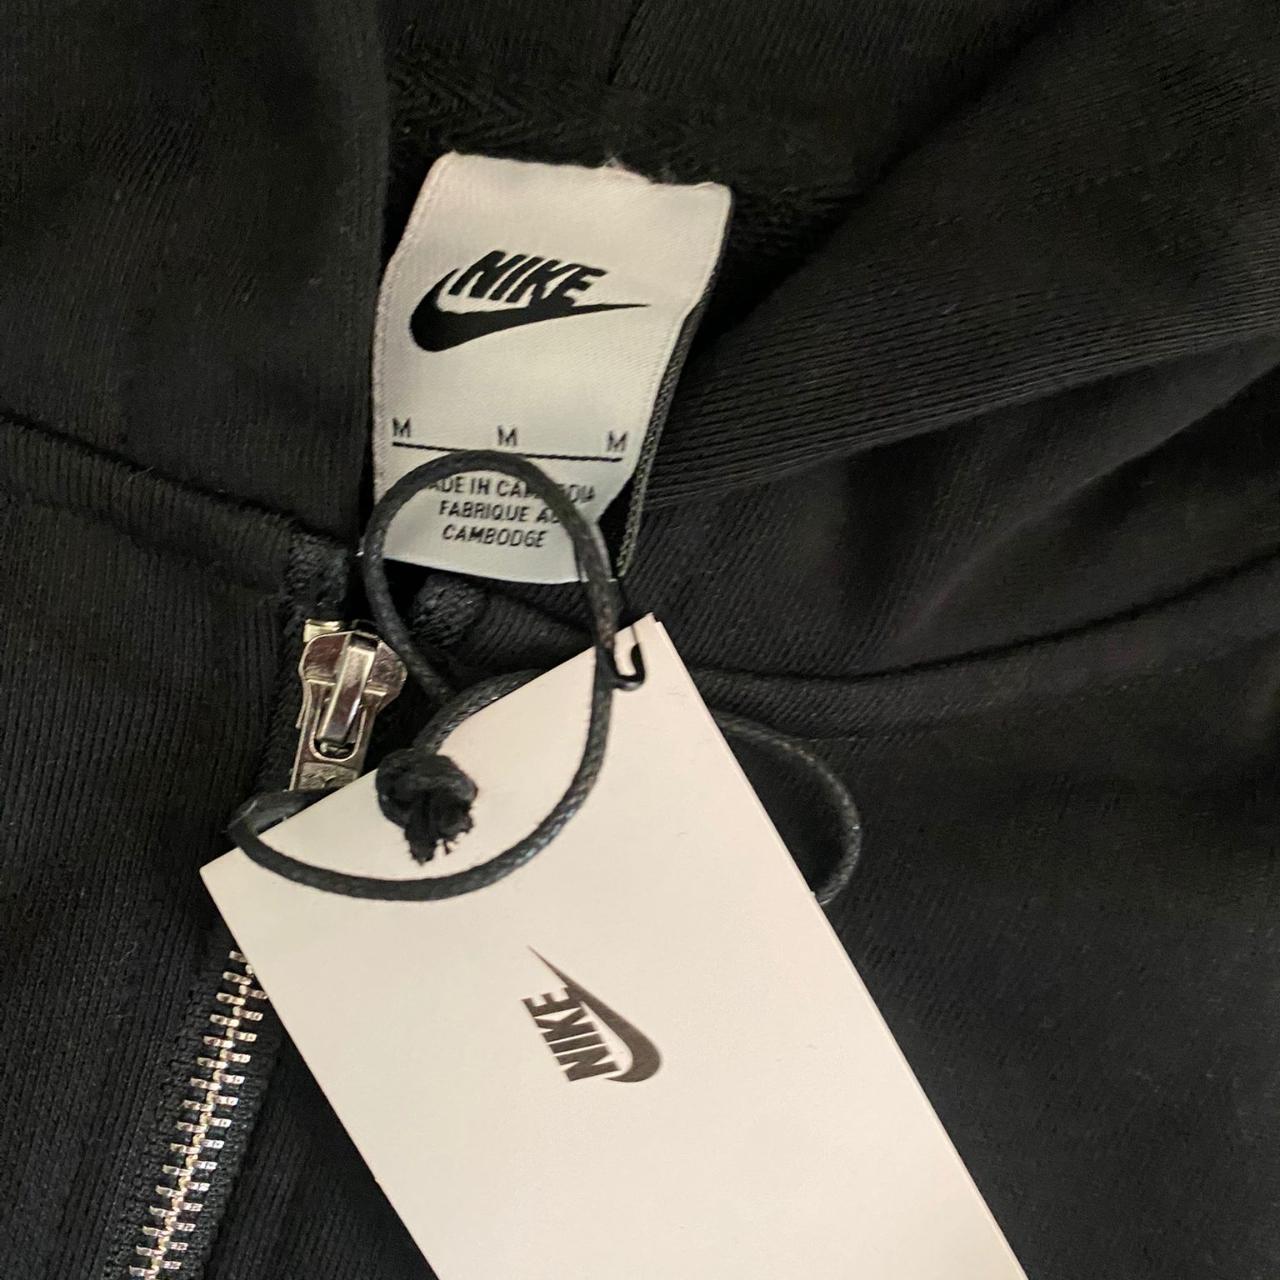 Nike x Stussy zip up hoodie - Size M - Black and... - Depop